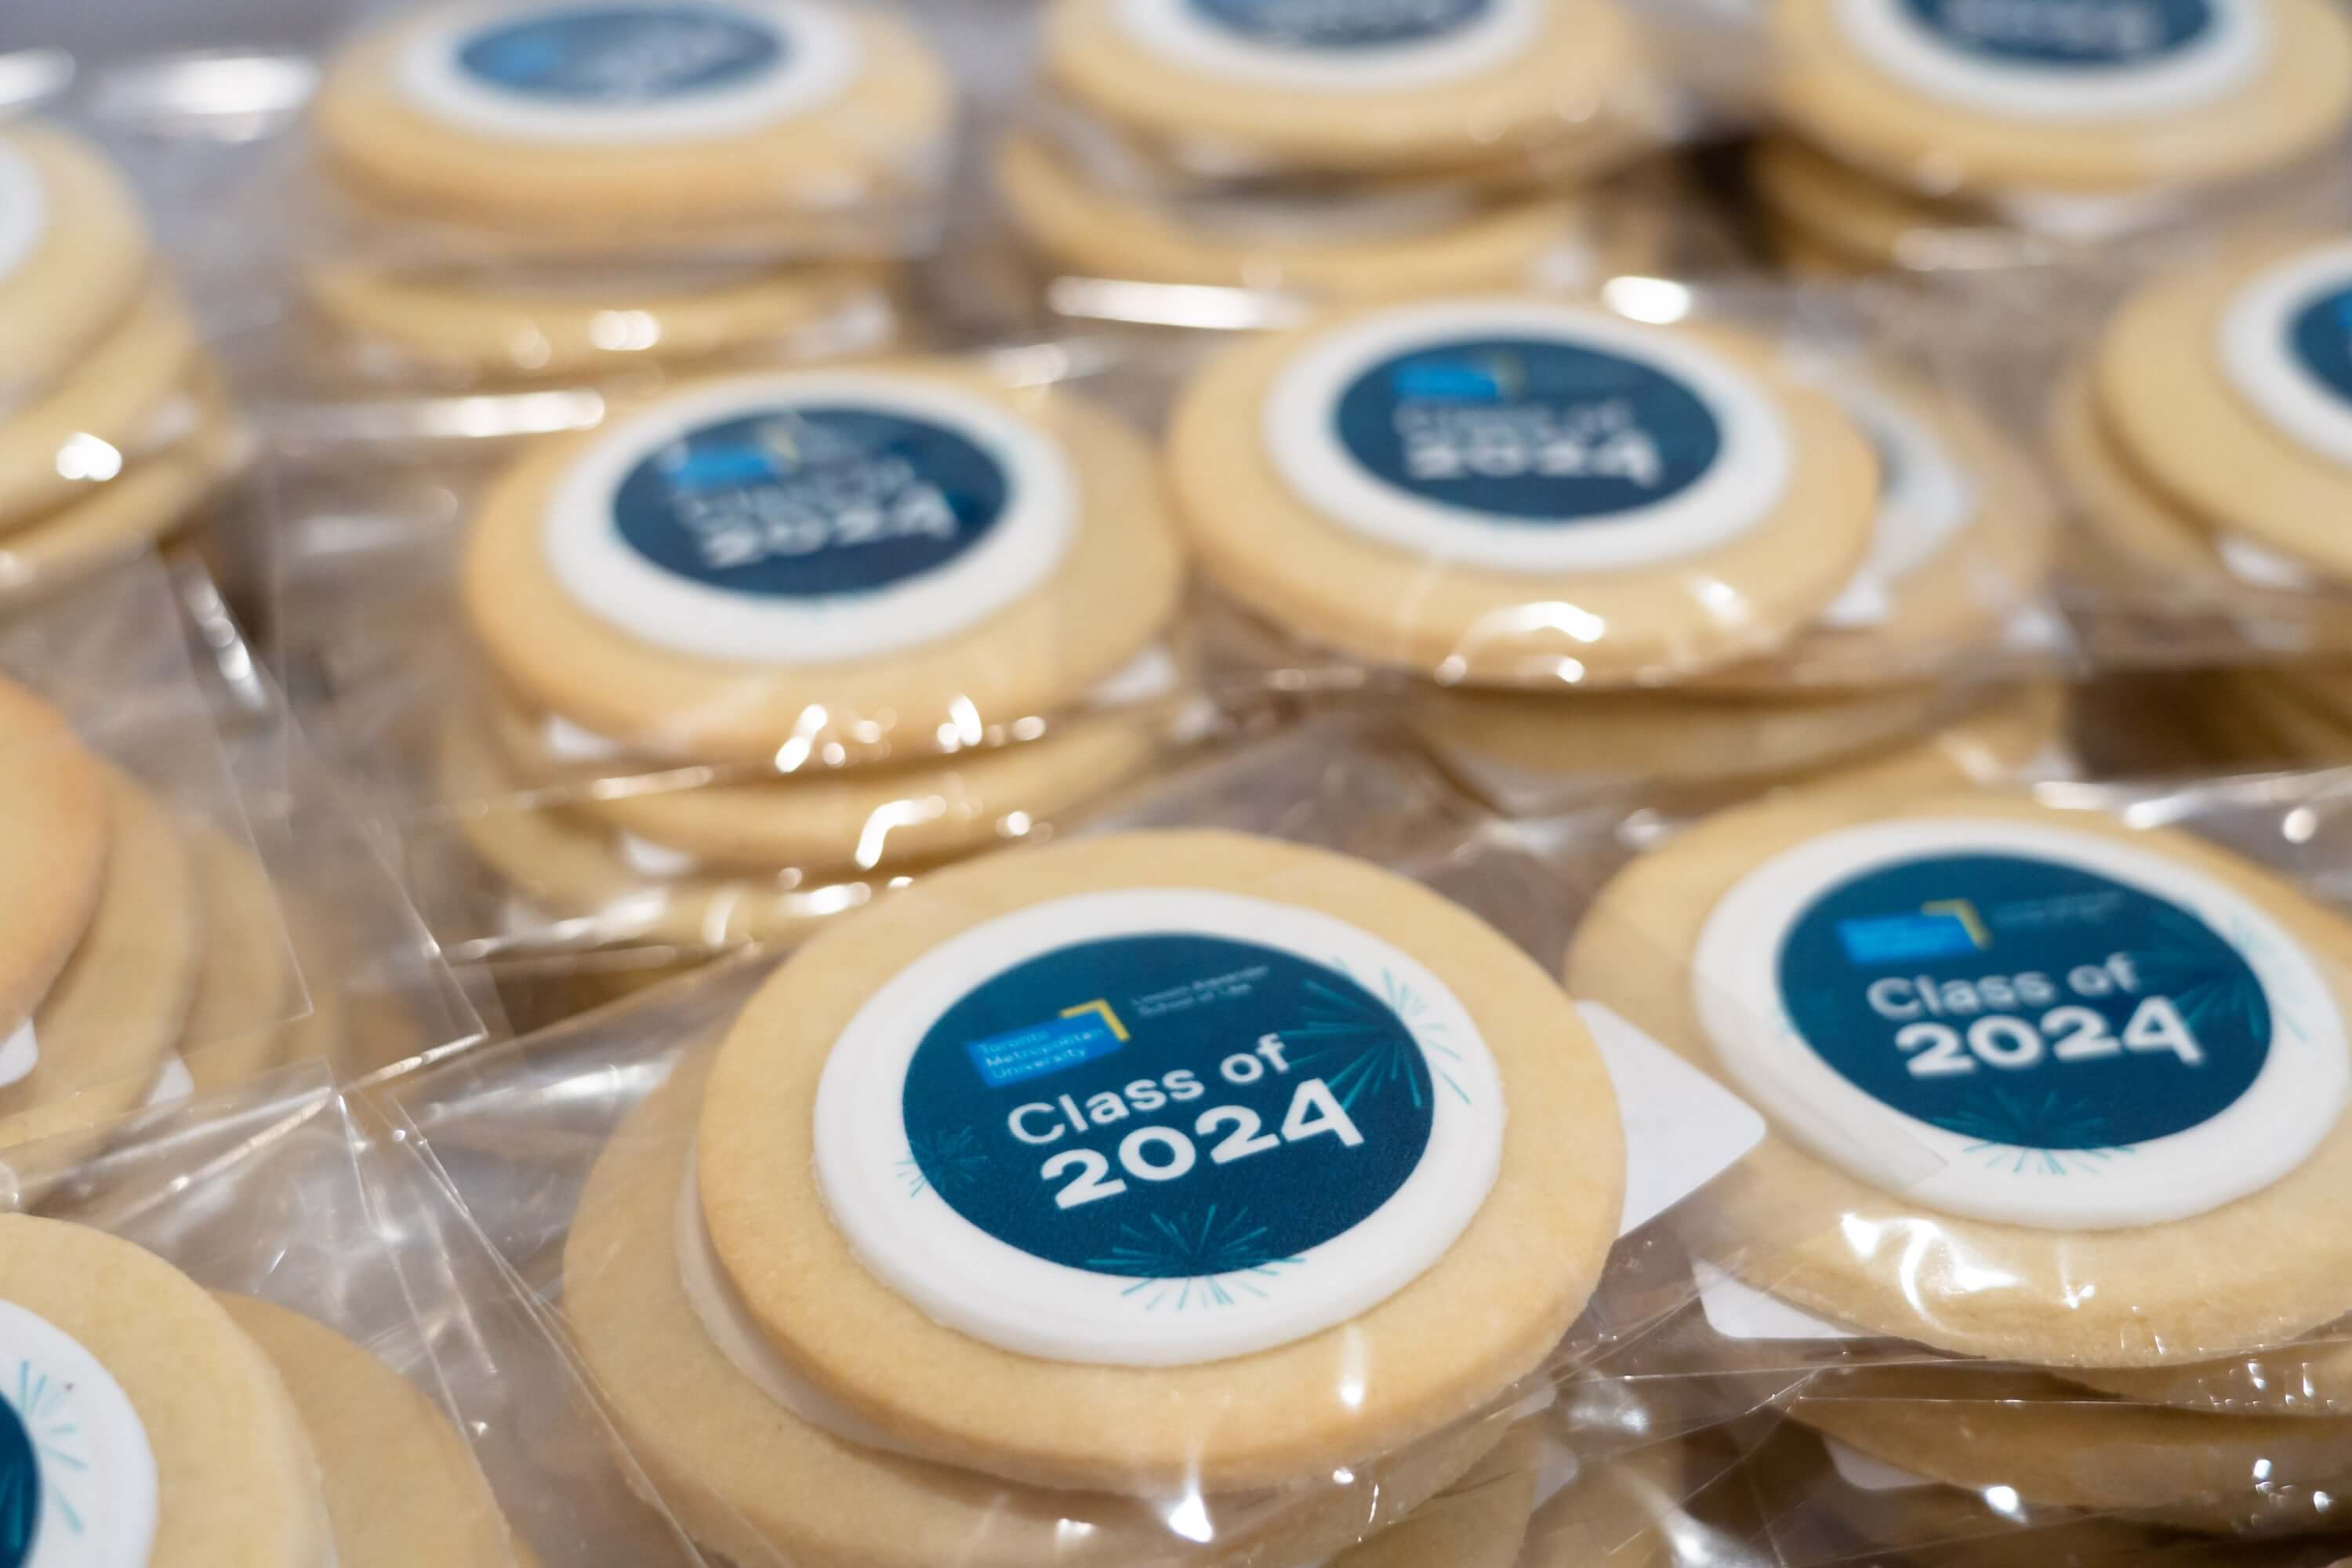 "Class of 2024" cookies.